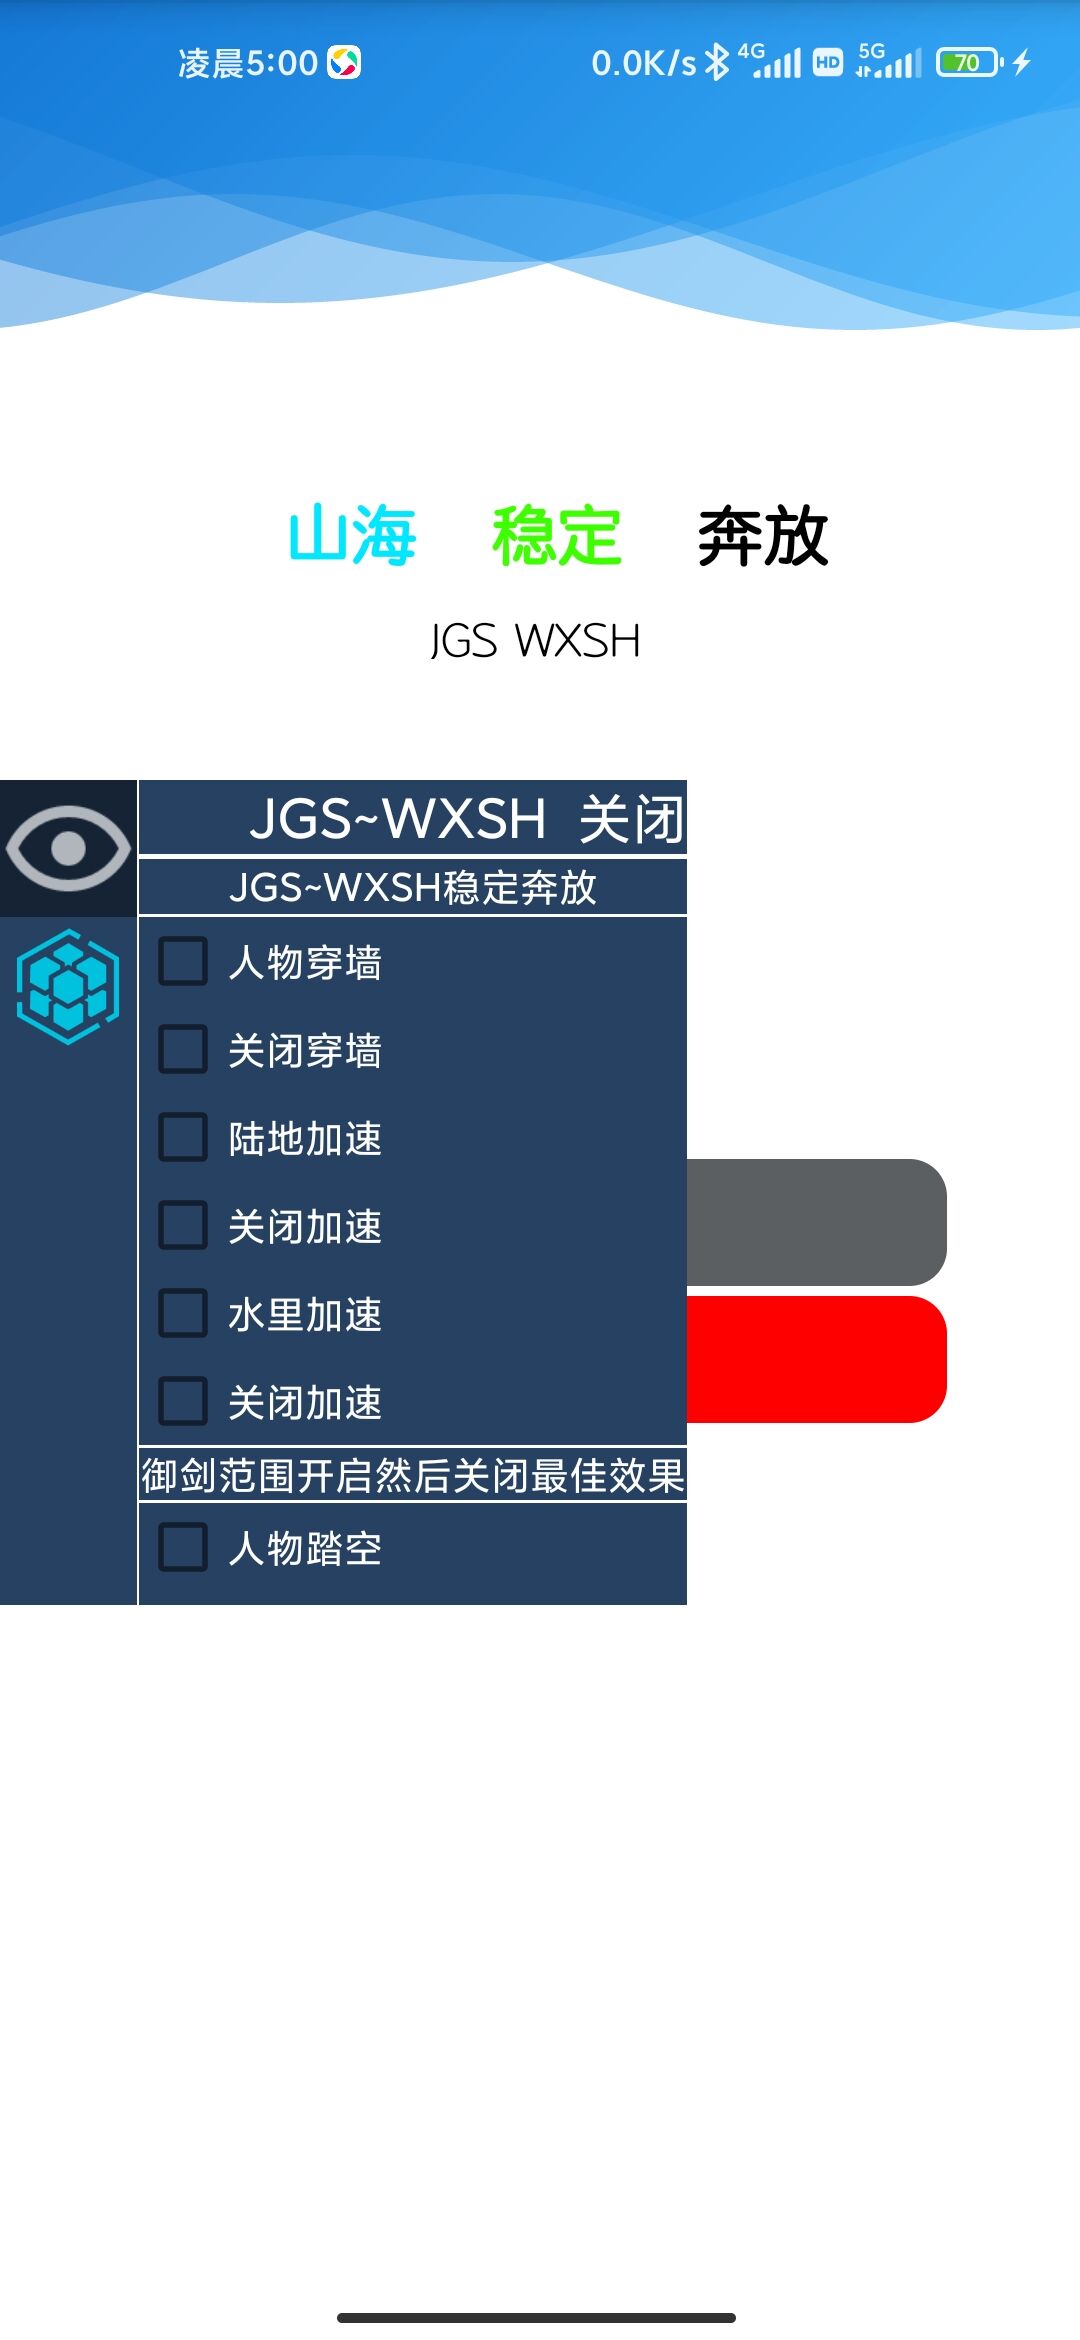 妄想山海·JGS~WXSH_8.2多功能助手「2022.1.16」